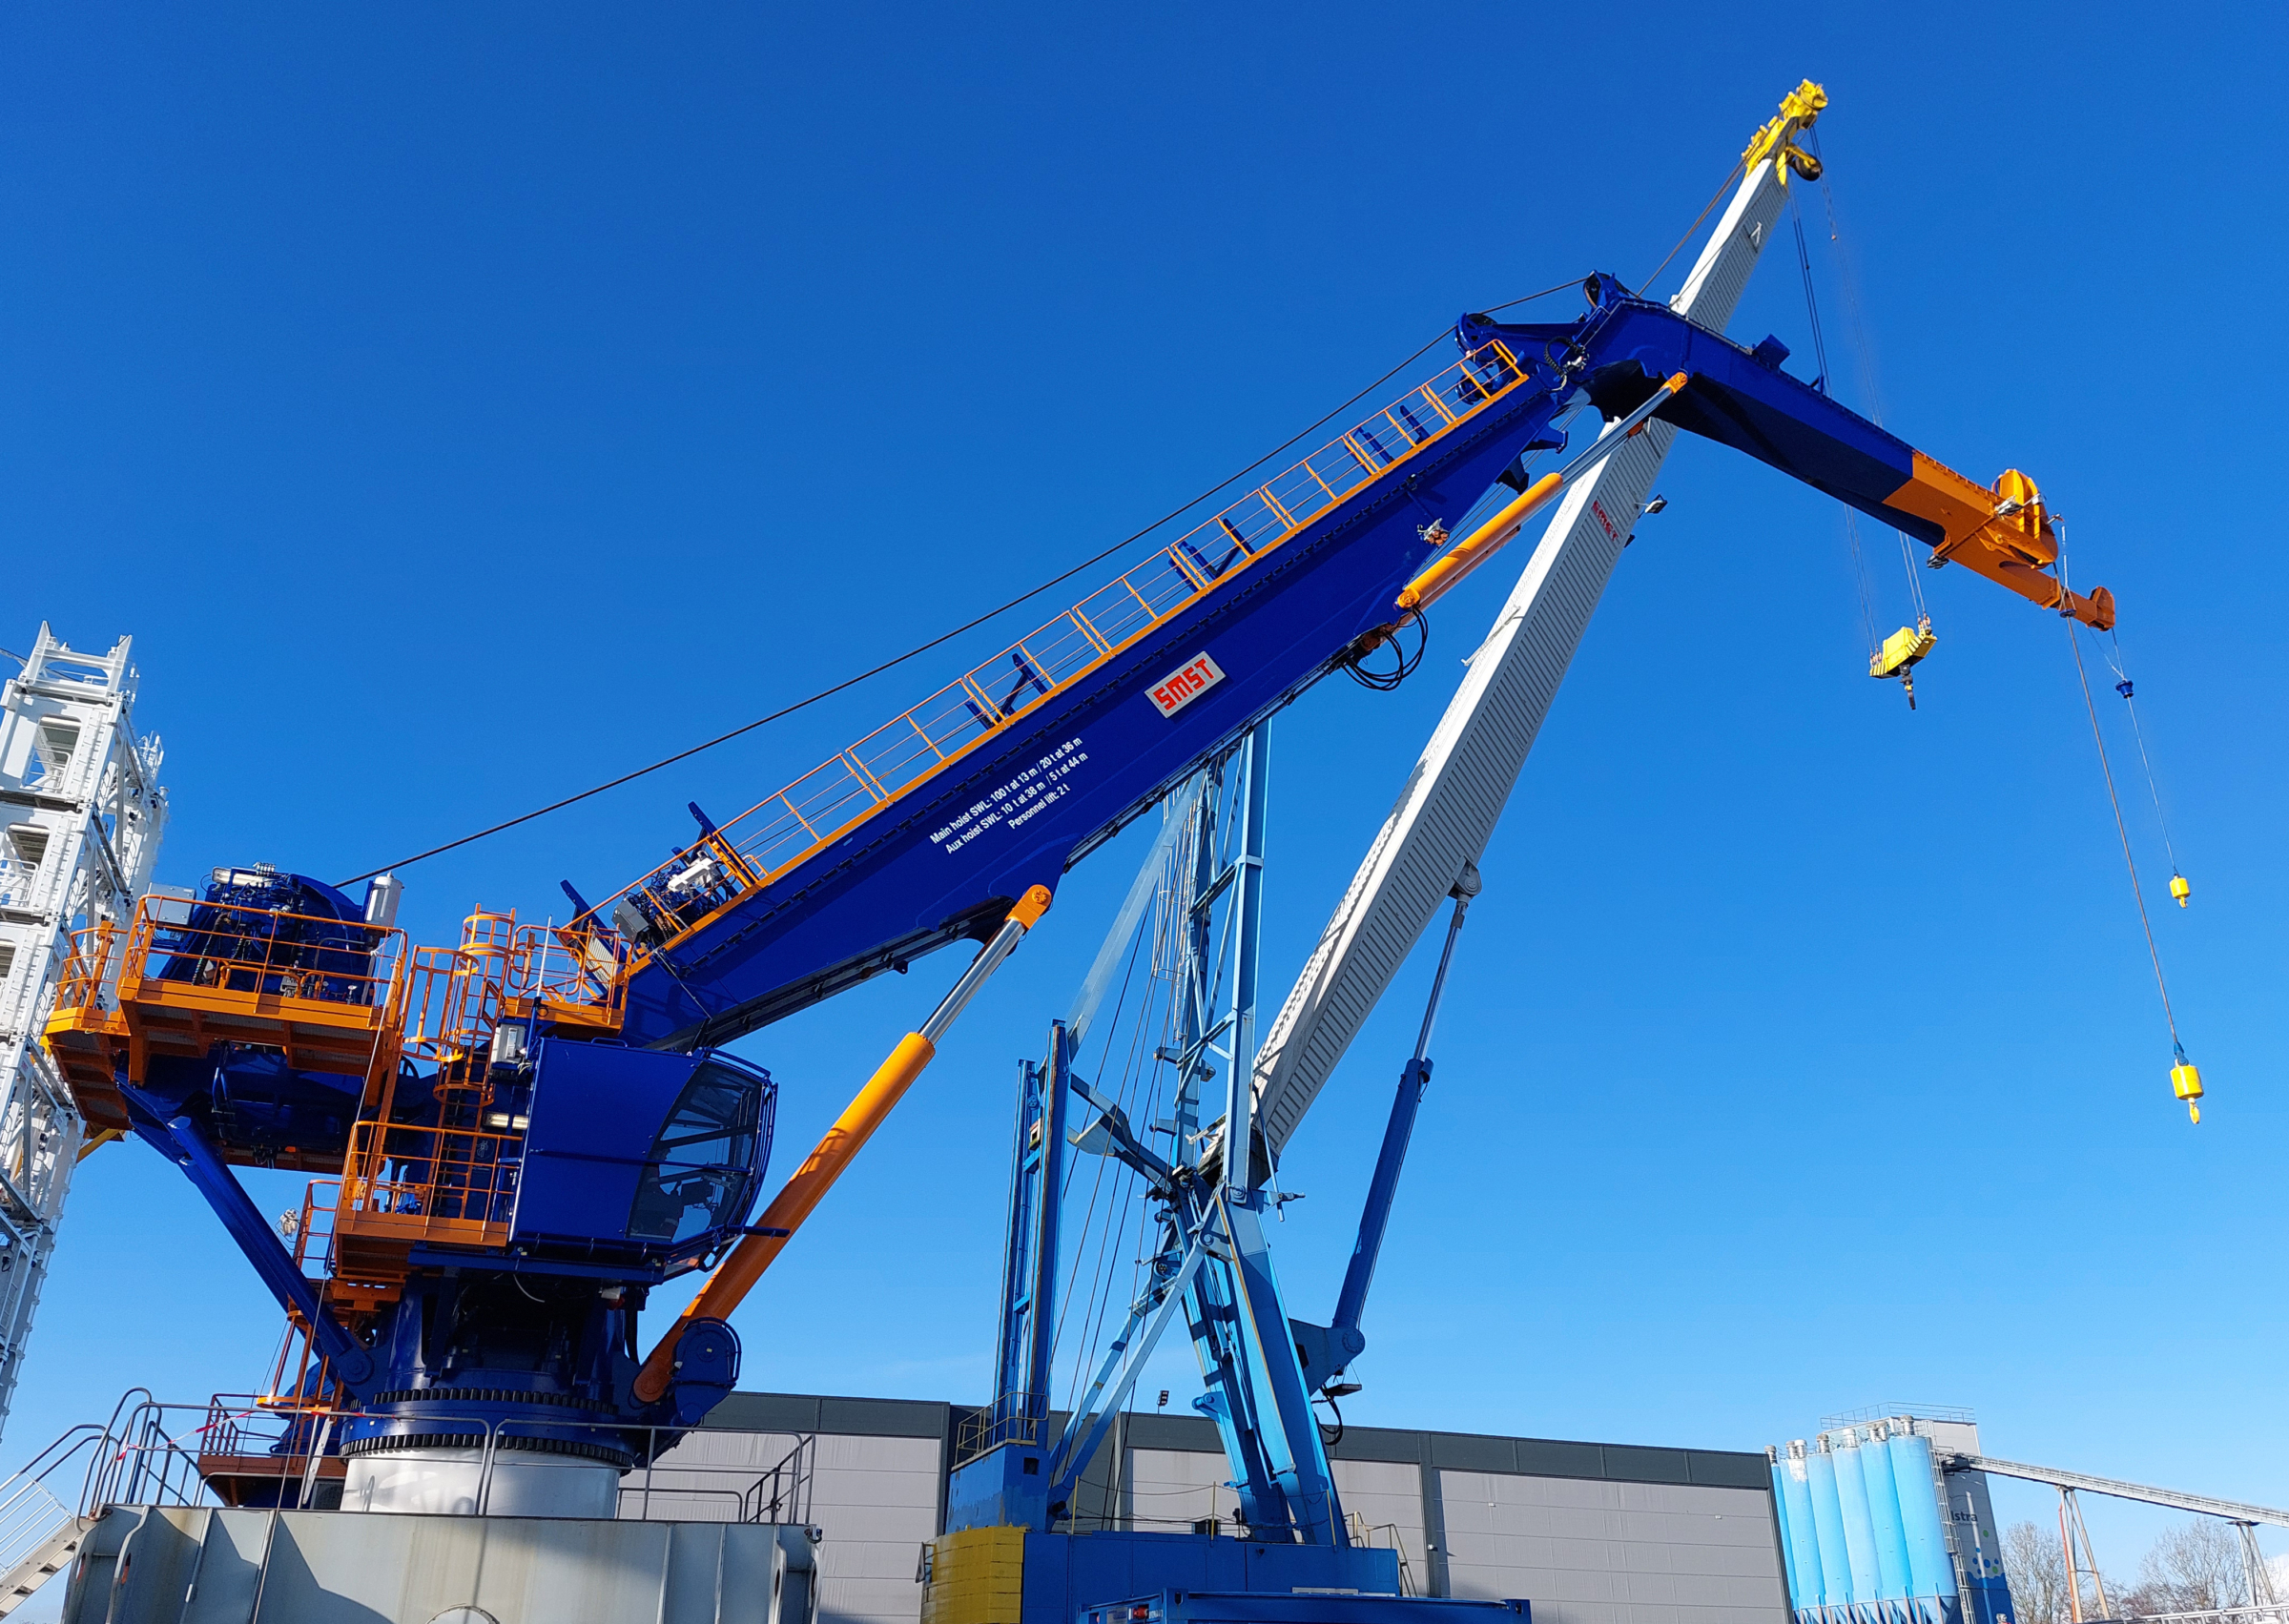 Again SMST knuckle boom crane for Van Oord